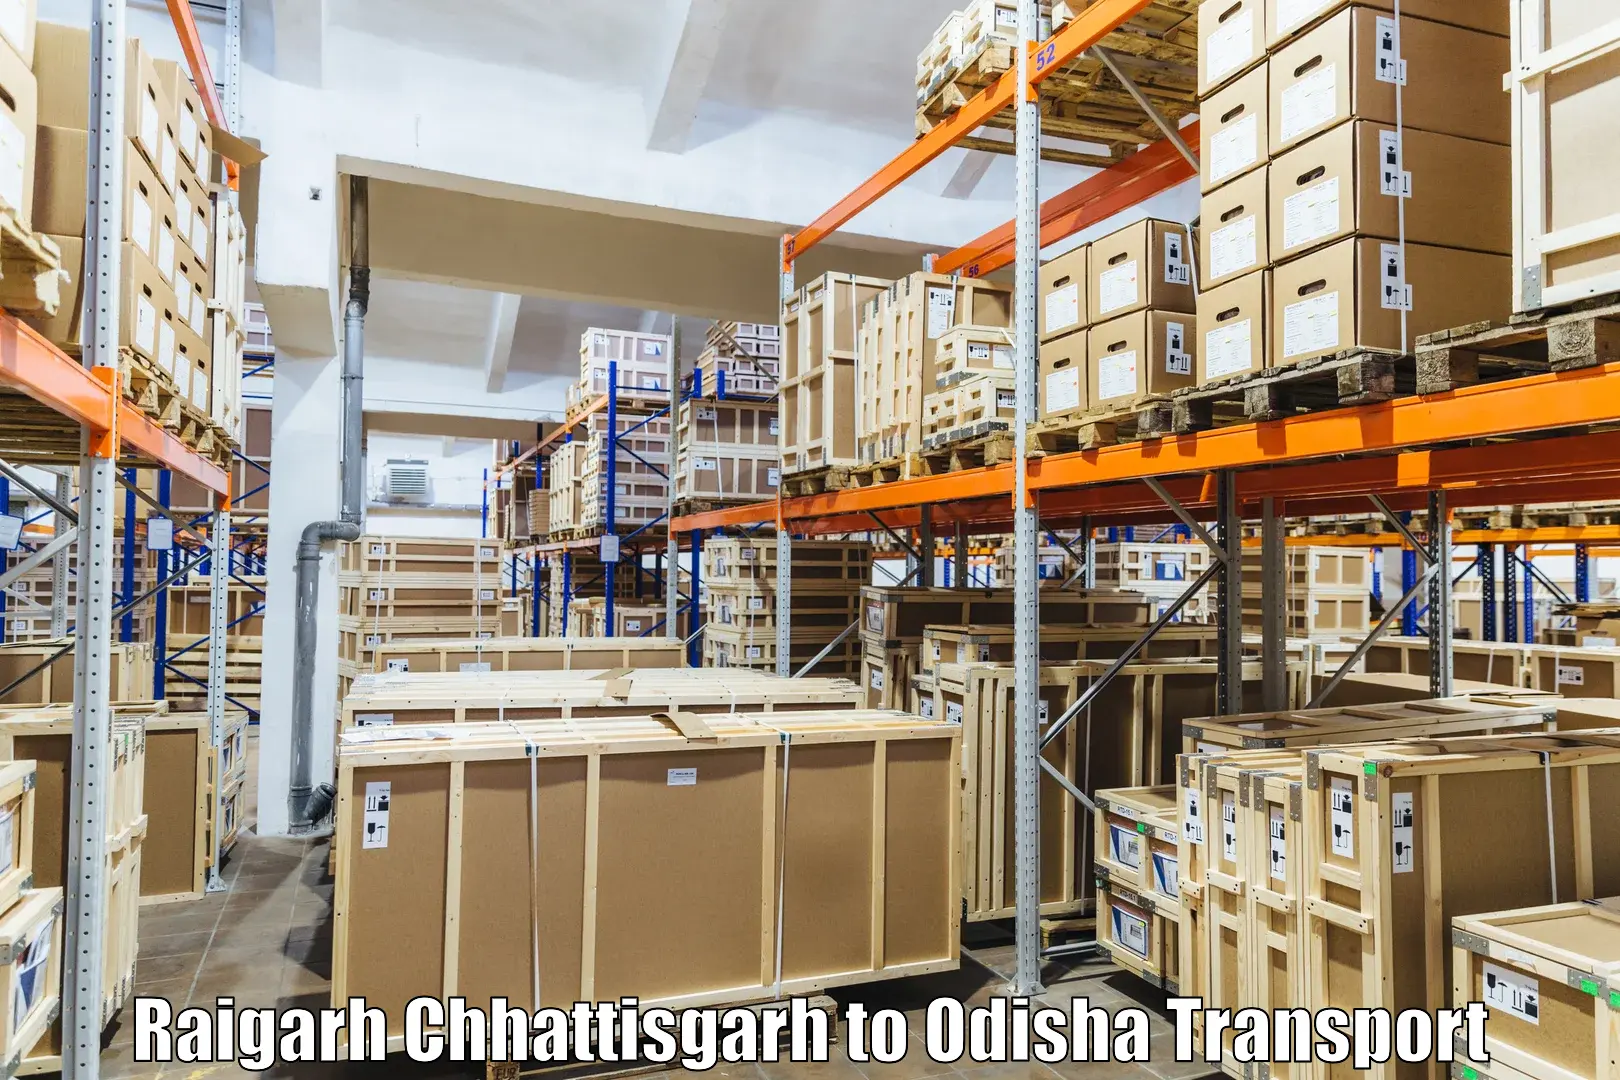 Furniture transport service Raigarh Chhattisgarh to Jeypore